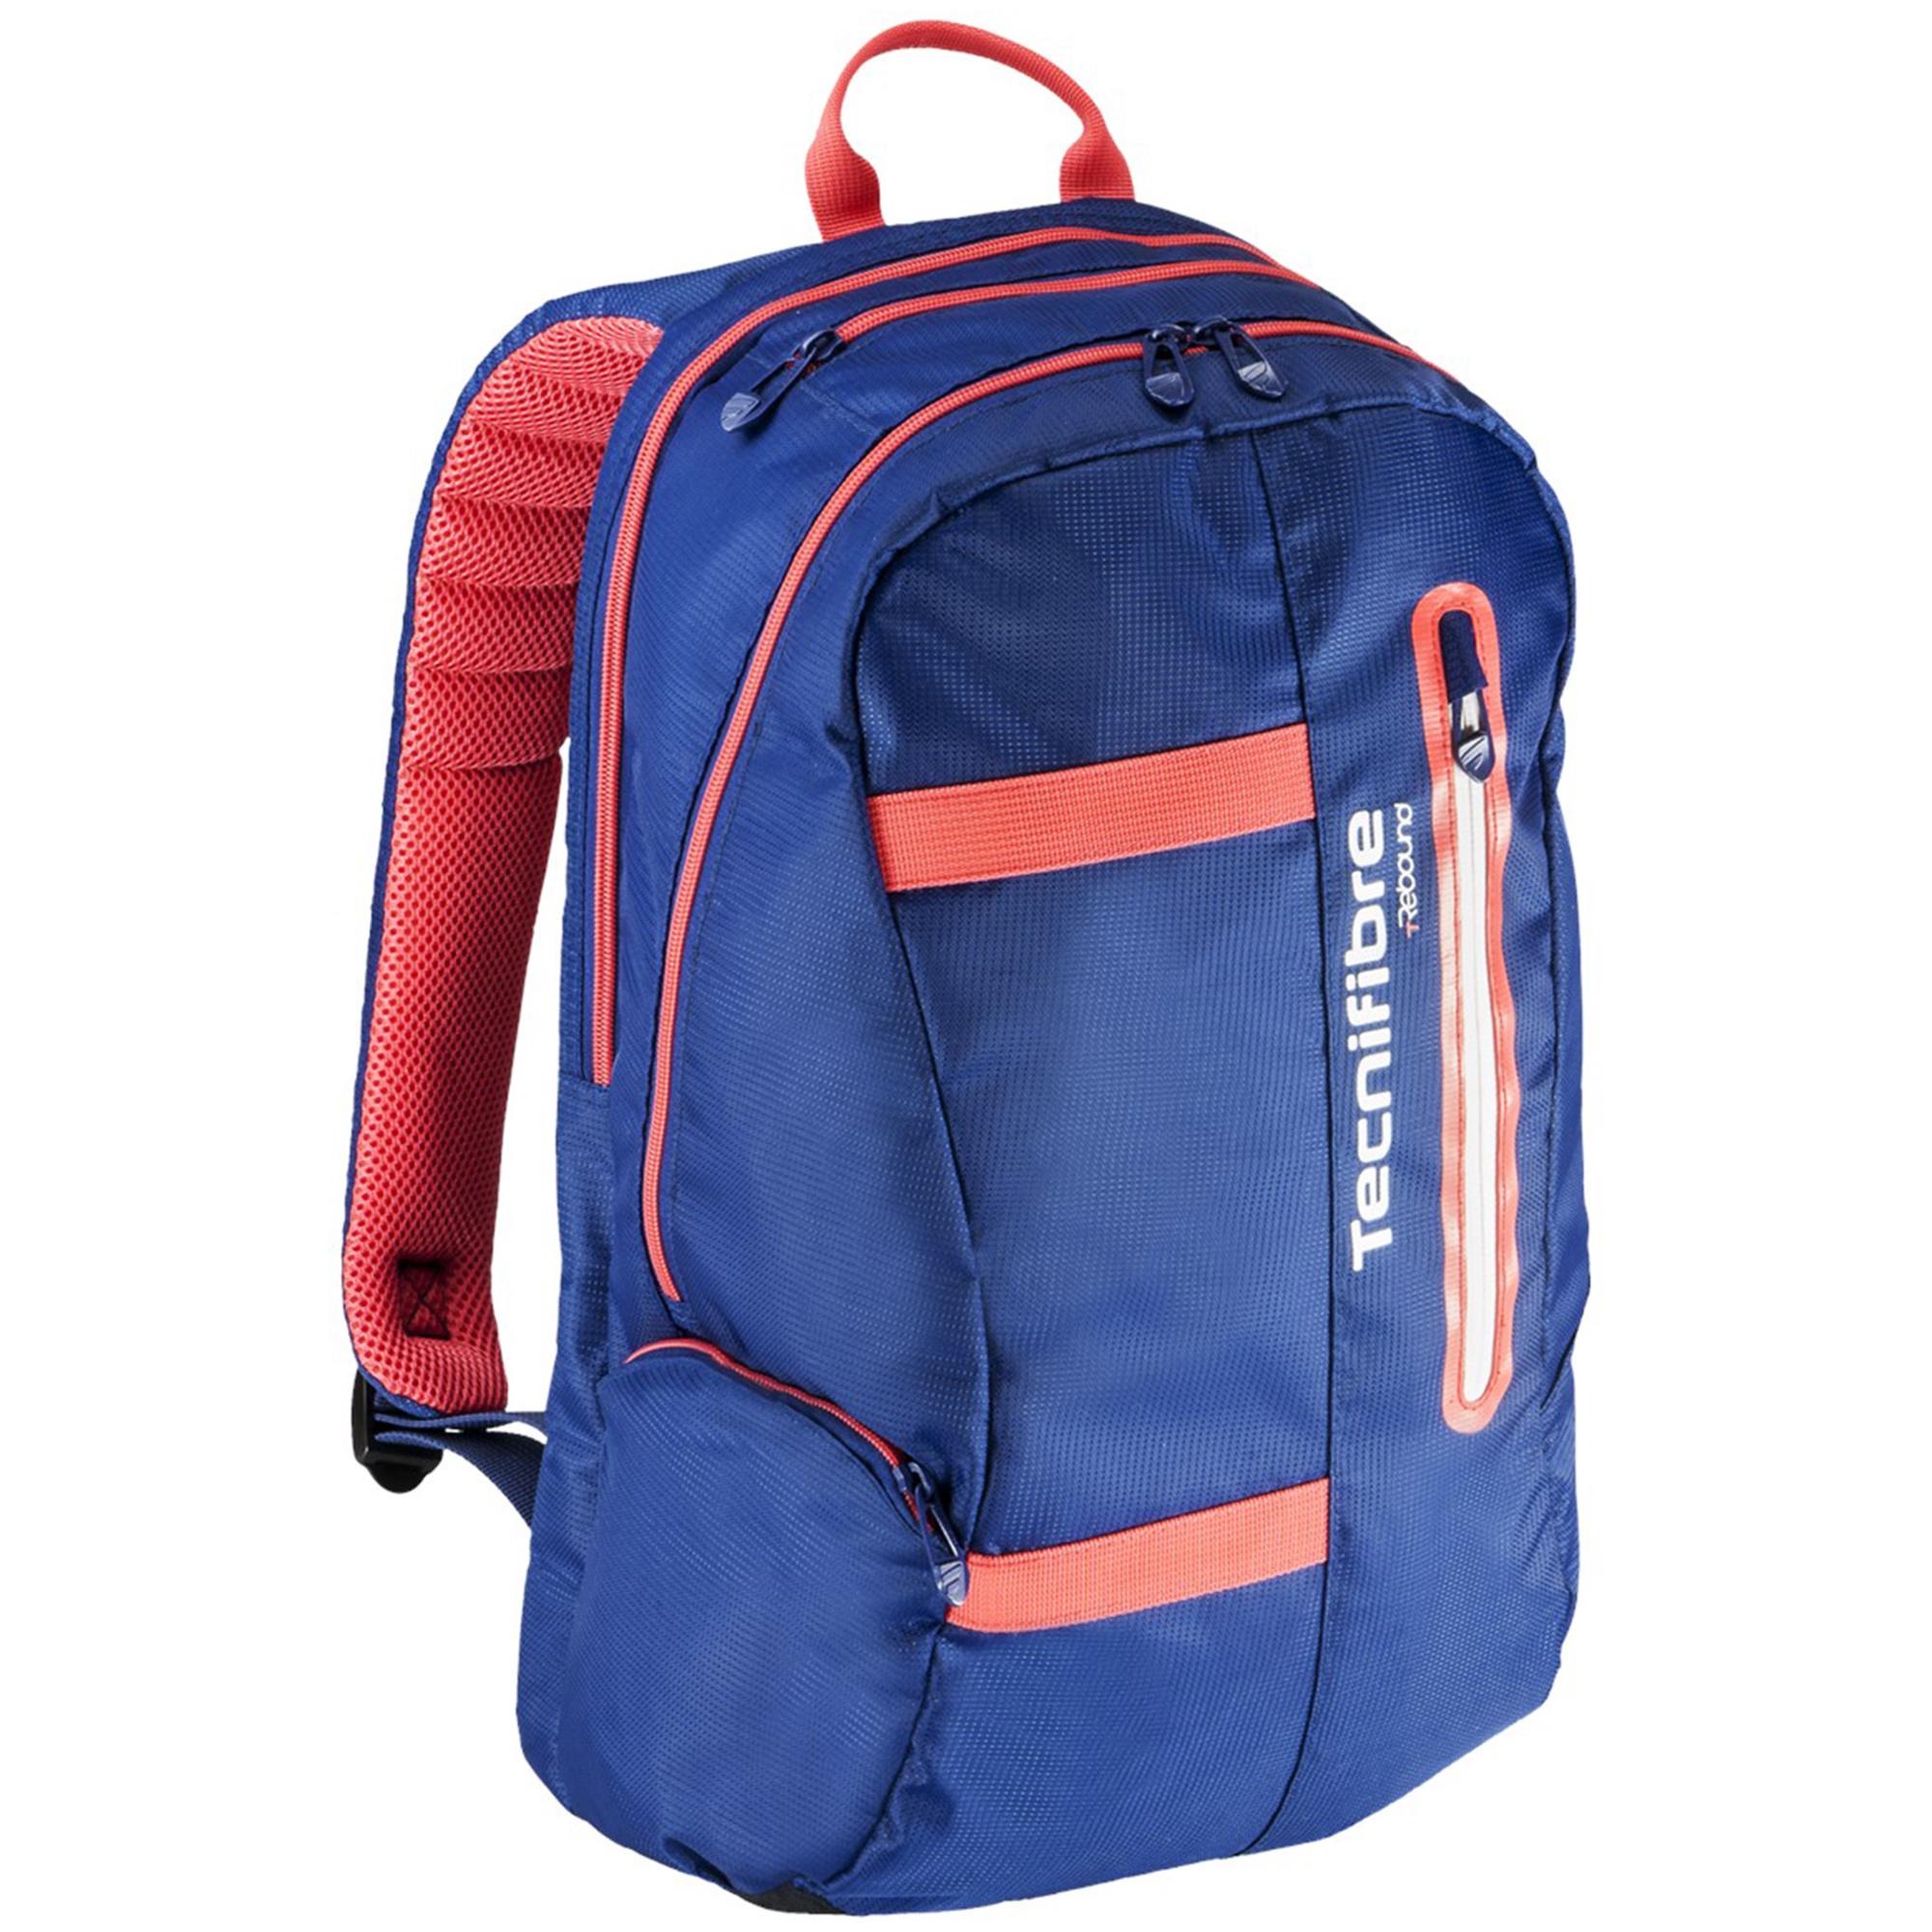 Tecnifibre Rebound Backpack - Blue/Orange - Tennisnuts.com